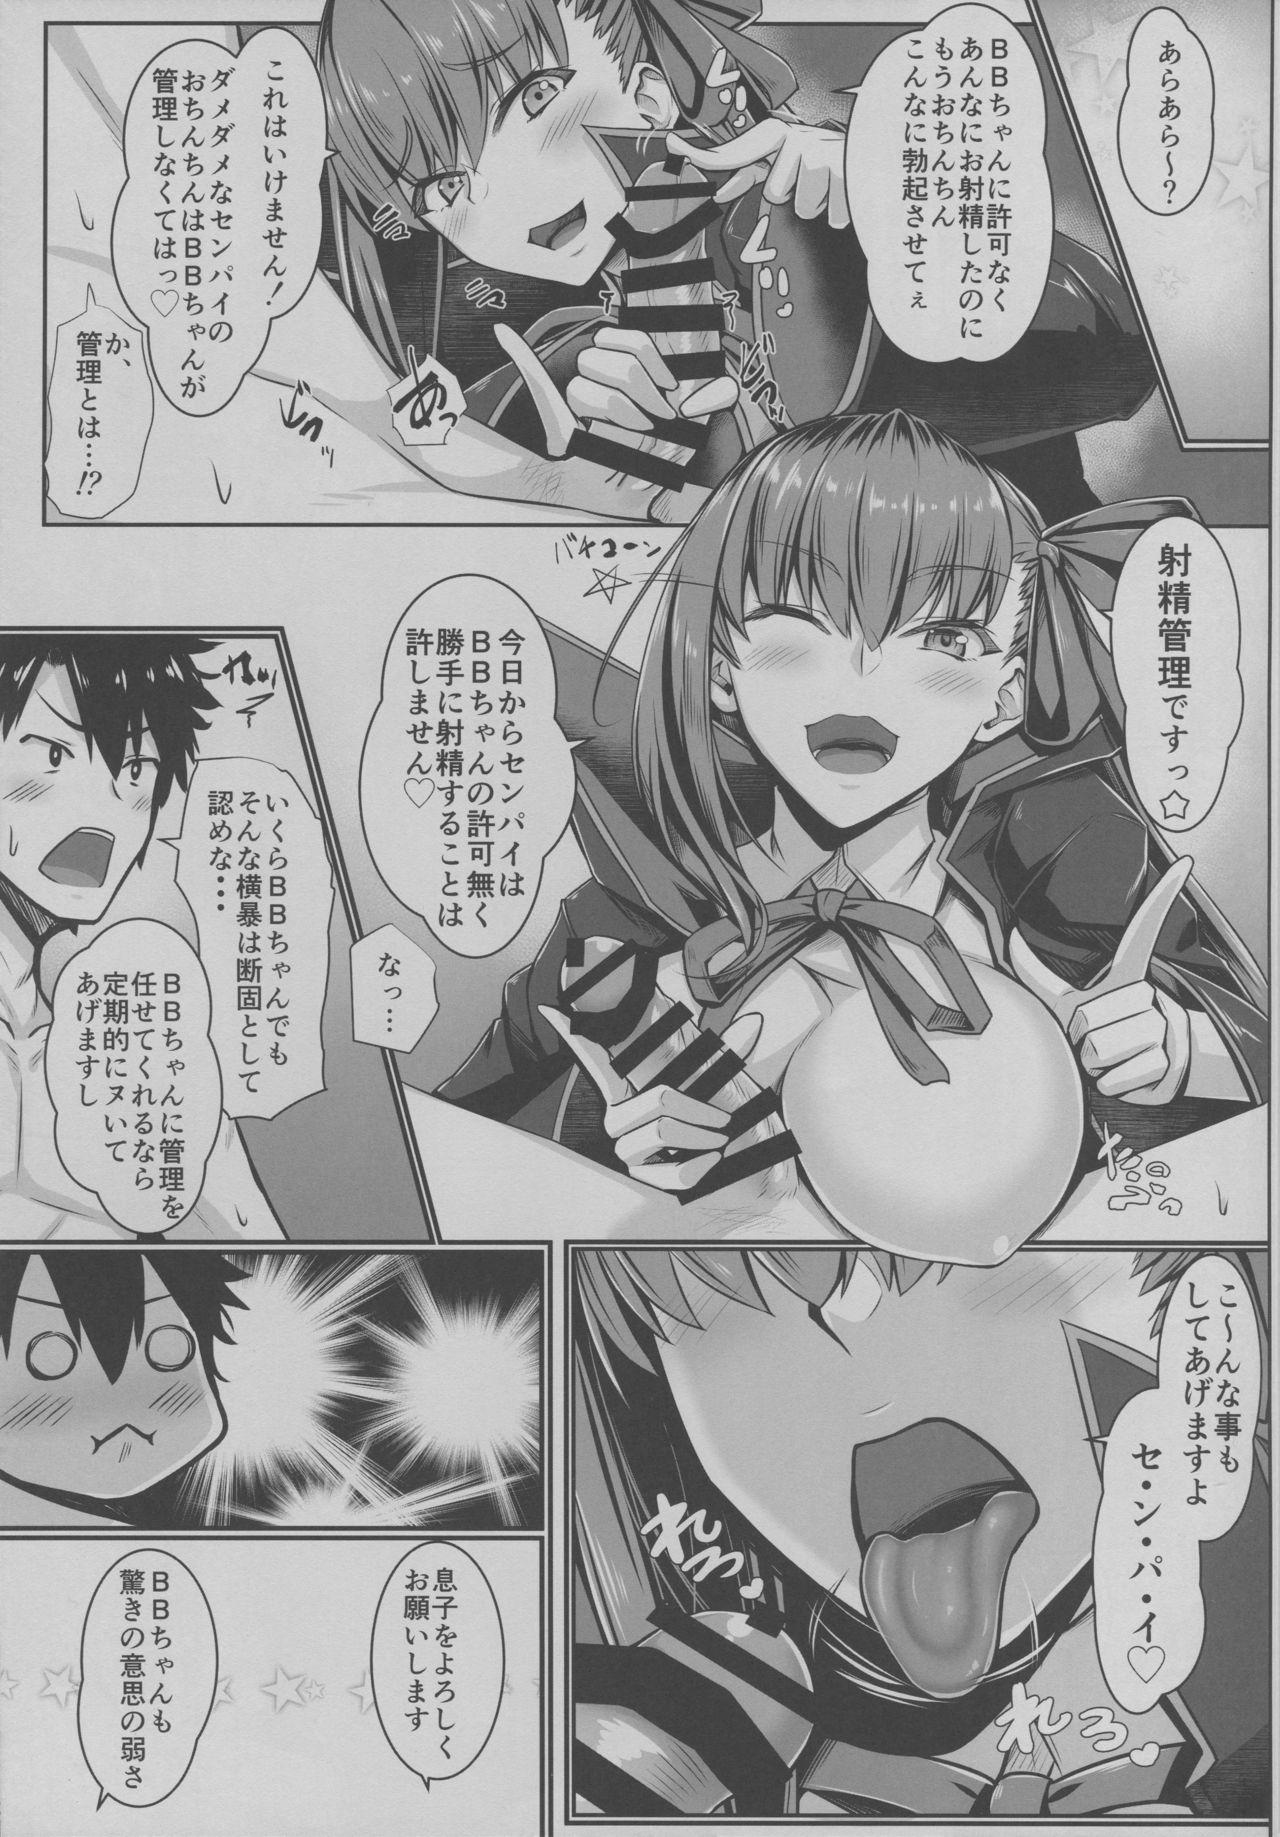 Rebolando BB-chan no Koto nanka Zenzen Suki ja Nain dakara ne! - Fate grand order Alternative - Page 10